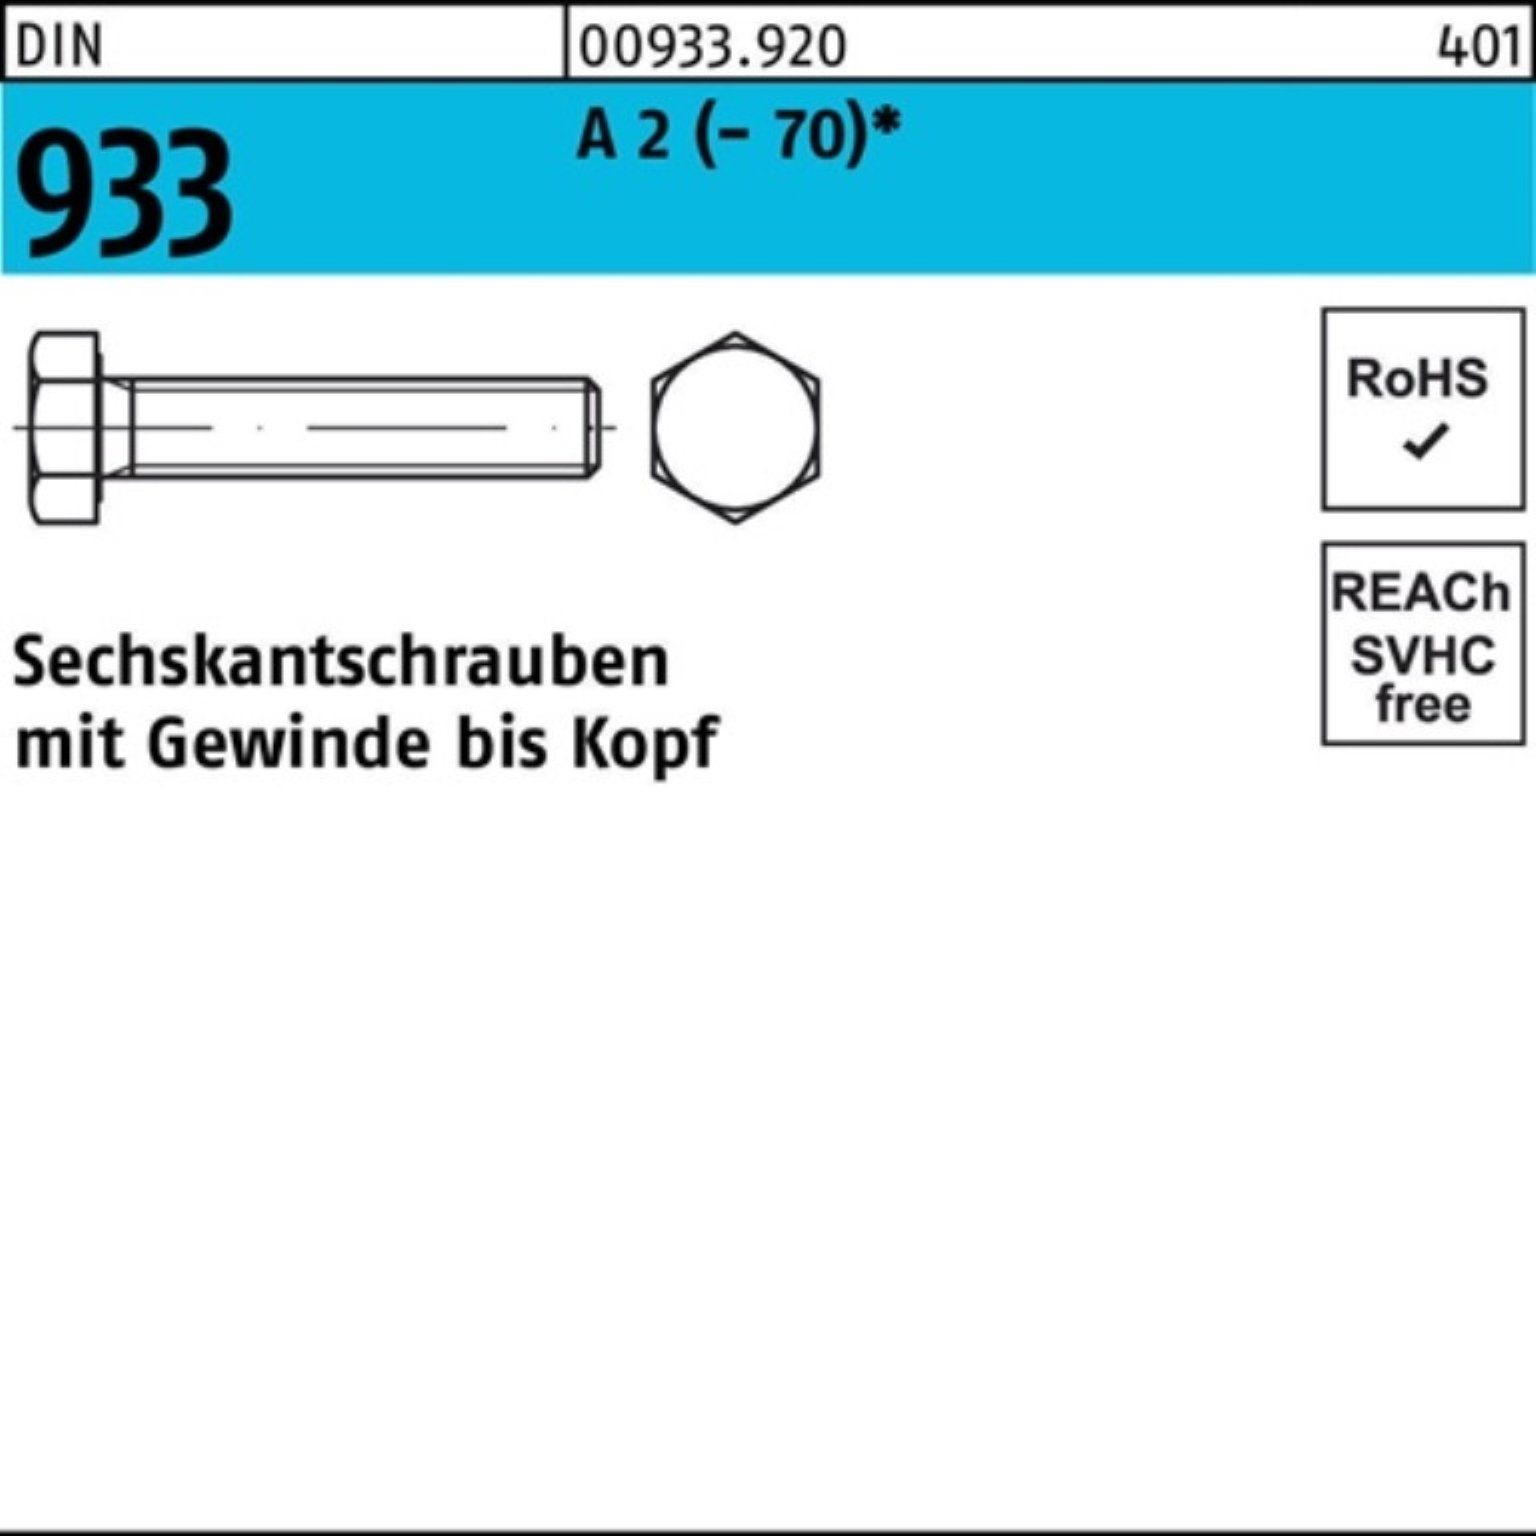 Reyher Sechskantschraube Pack VG (70) D 933 Sechskantschraube 2 Stück M33x 1 100er 130 A DIN